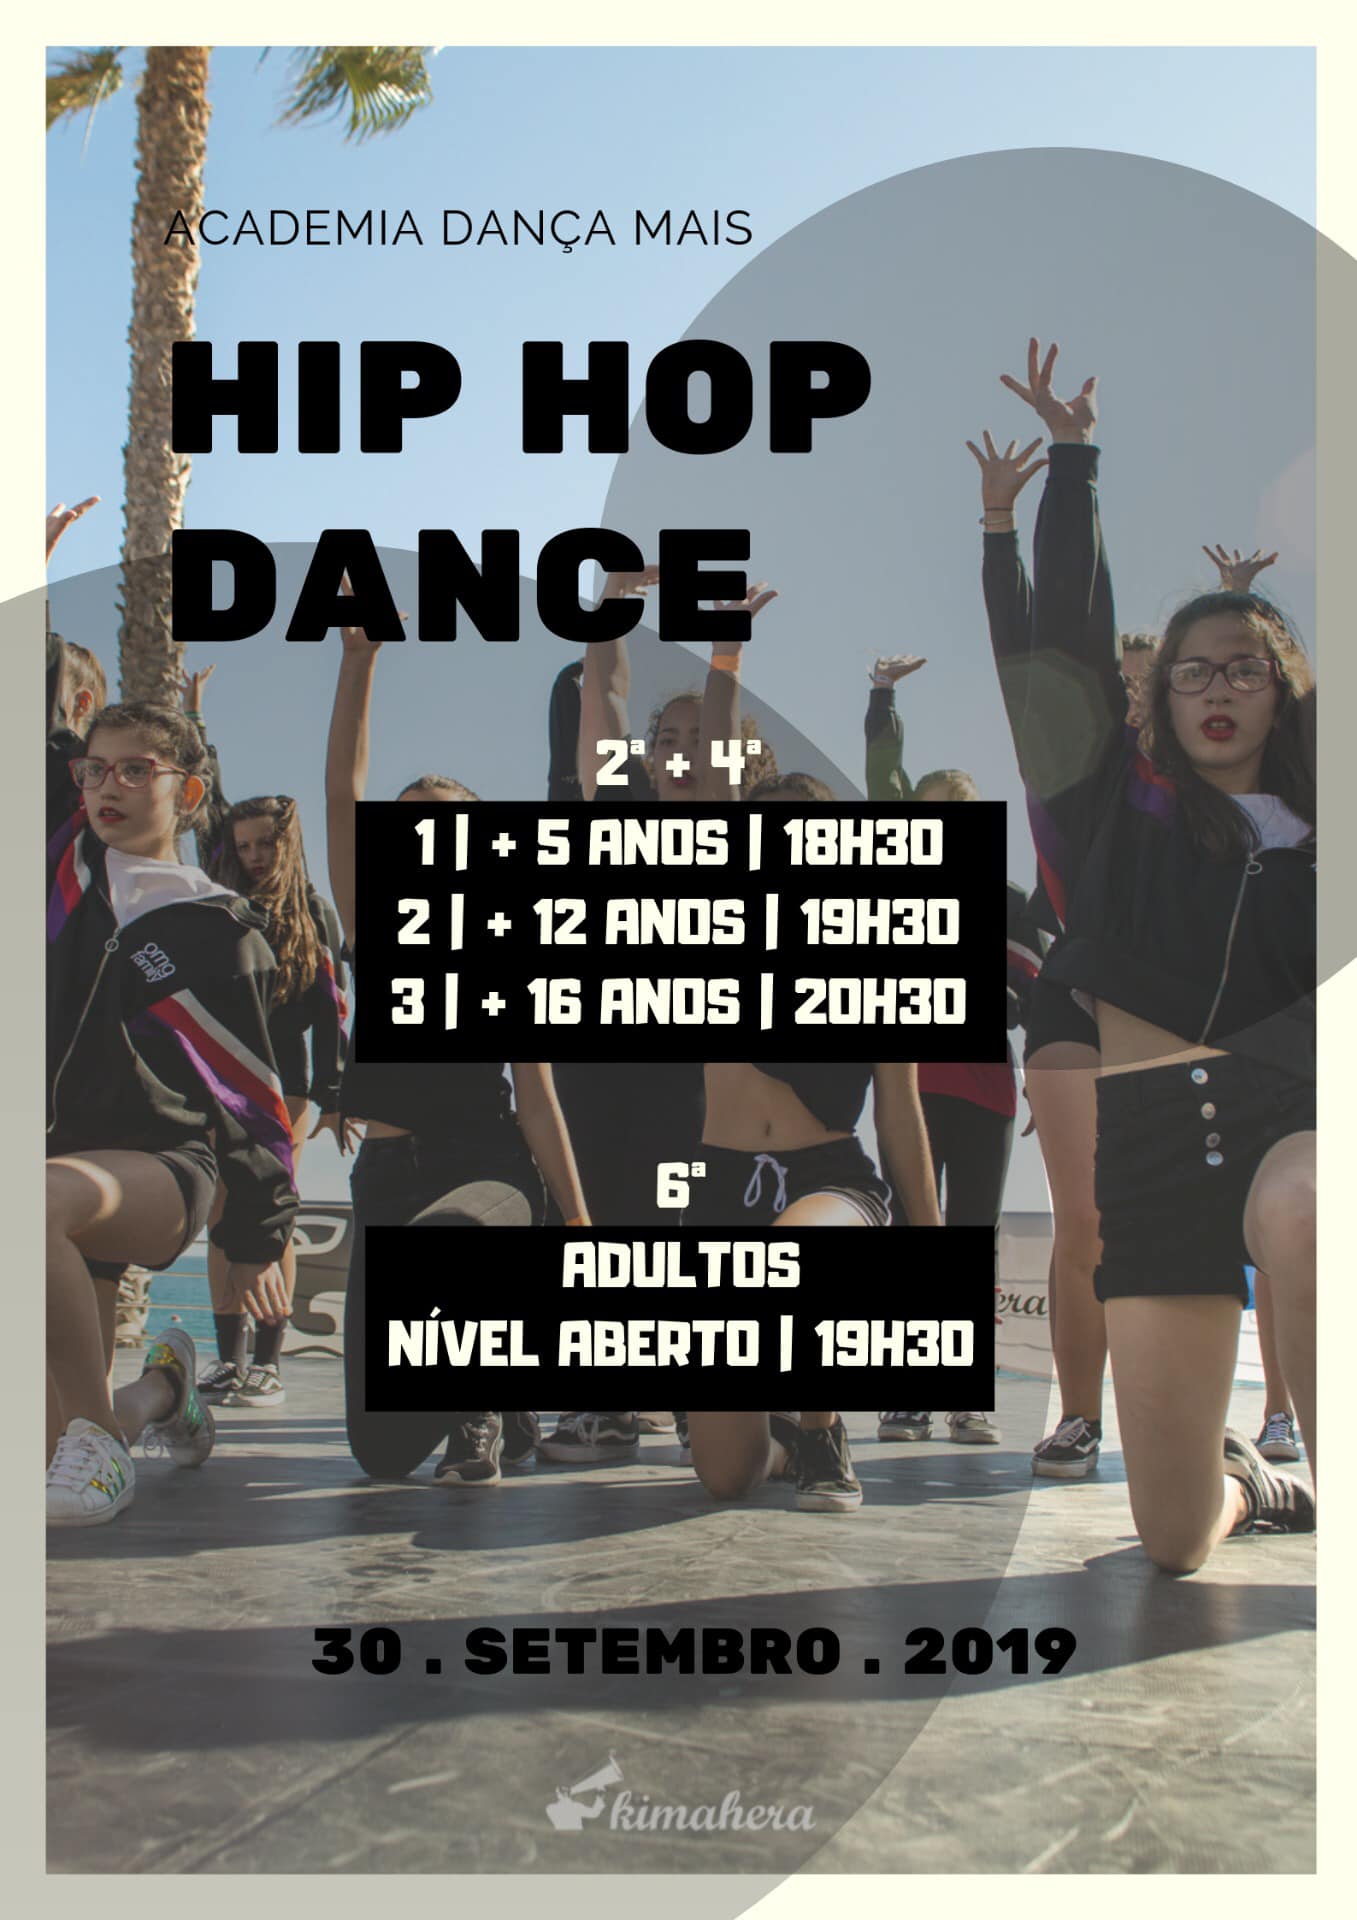 Mariana Rodrigues - Hip Hop Dance @ Dança Mais (Portimão)